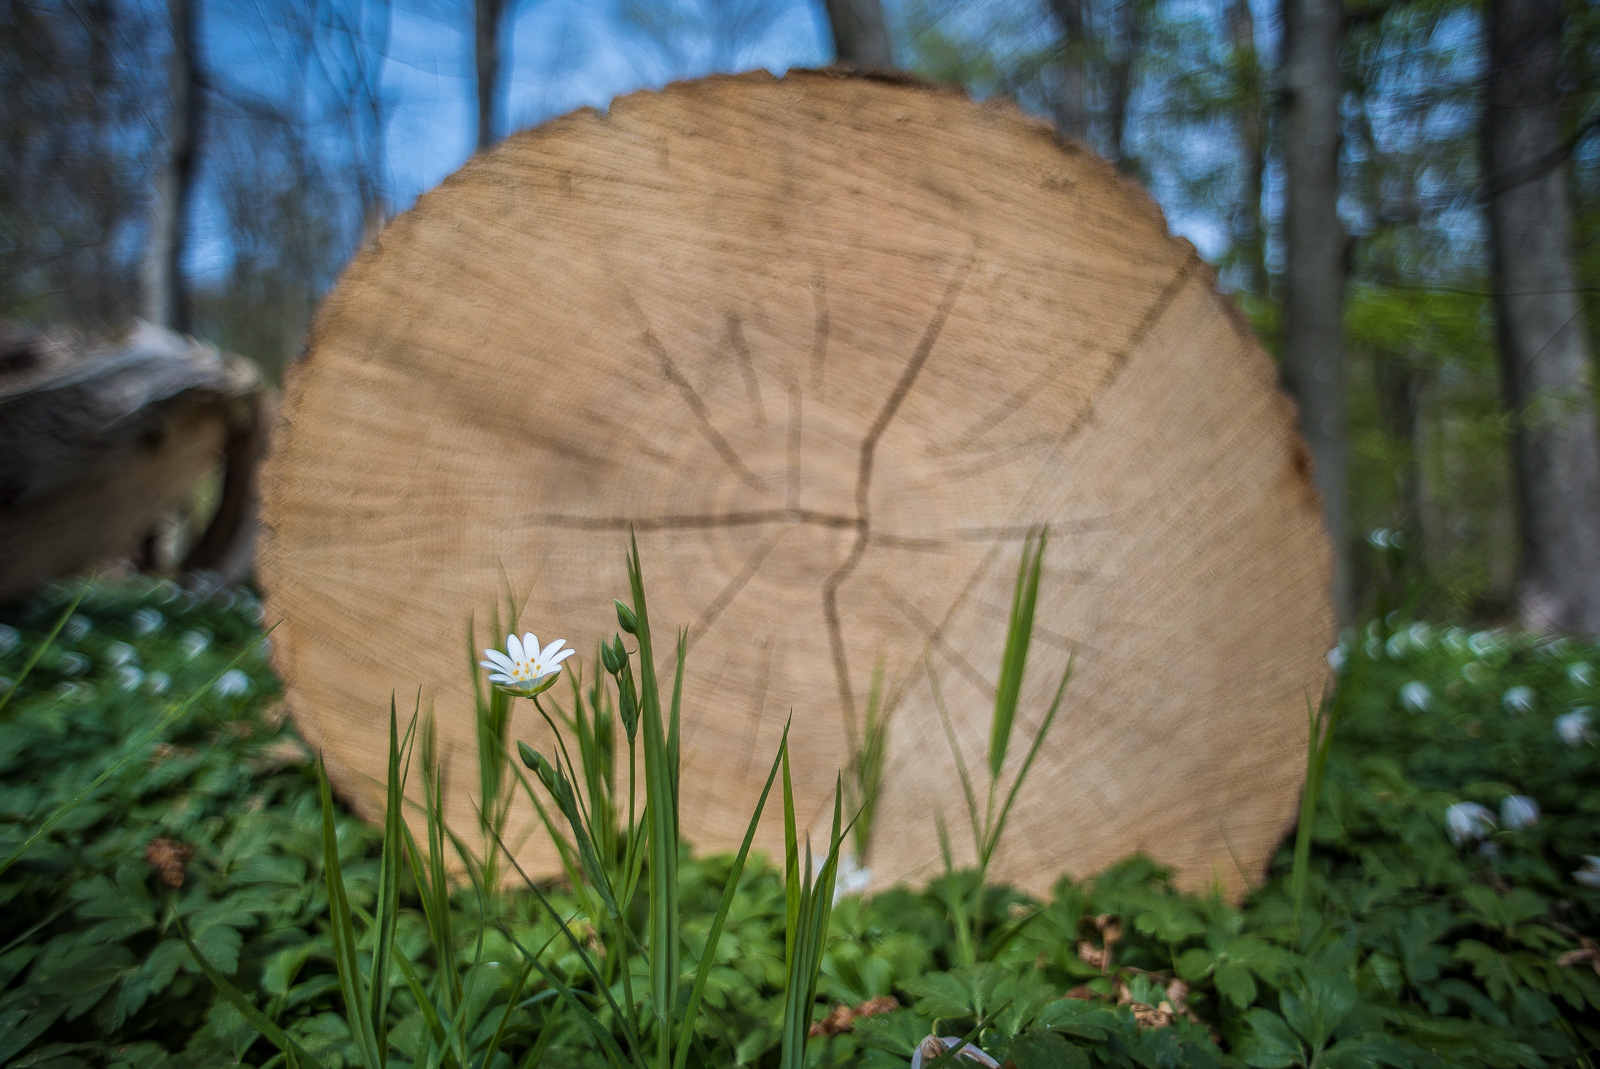 Ein einzelnes scharfes Buschwindröschen vor einem mächtigen abgesägten Baum, dessen Schnittfläche fast das ganze Bild füllt.